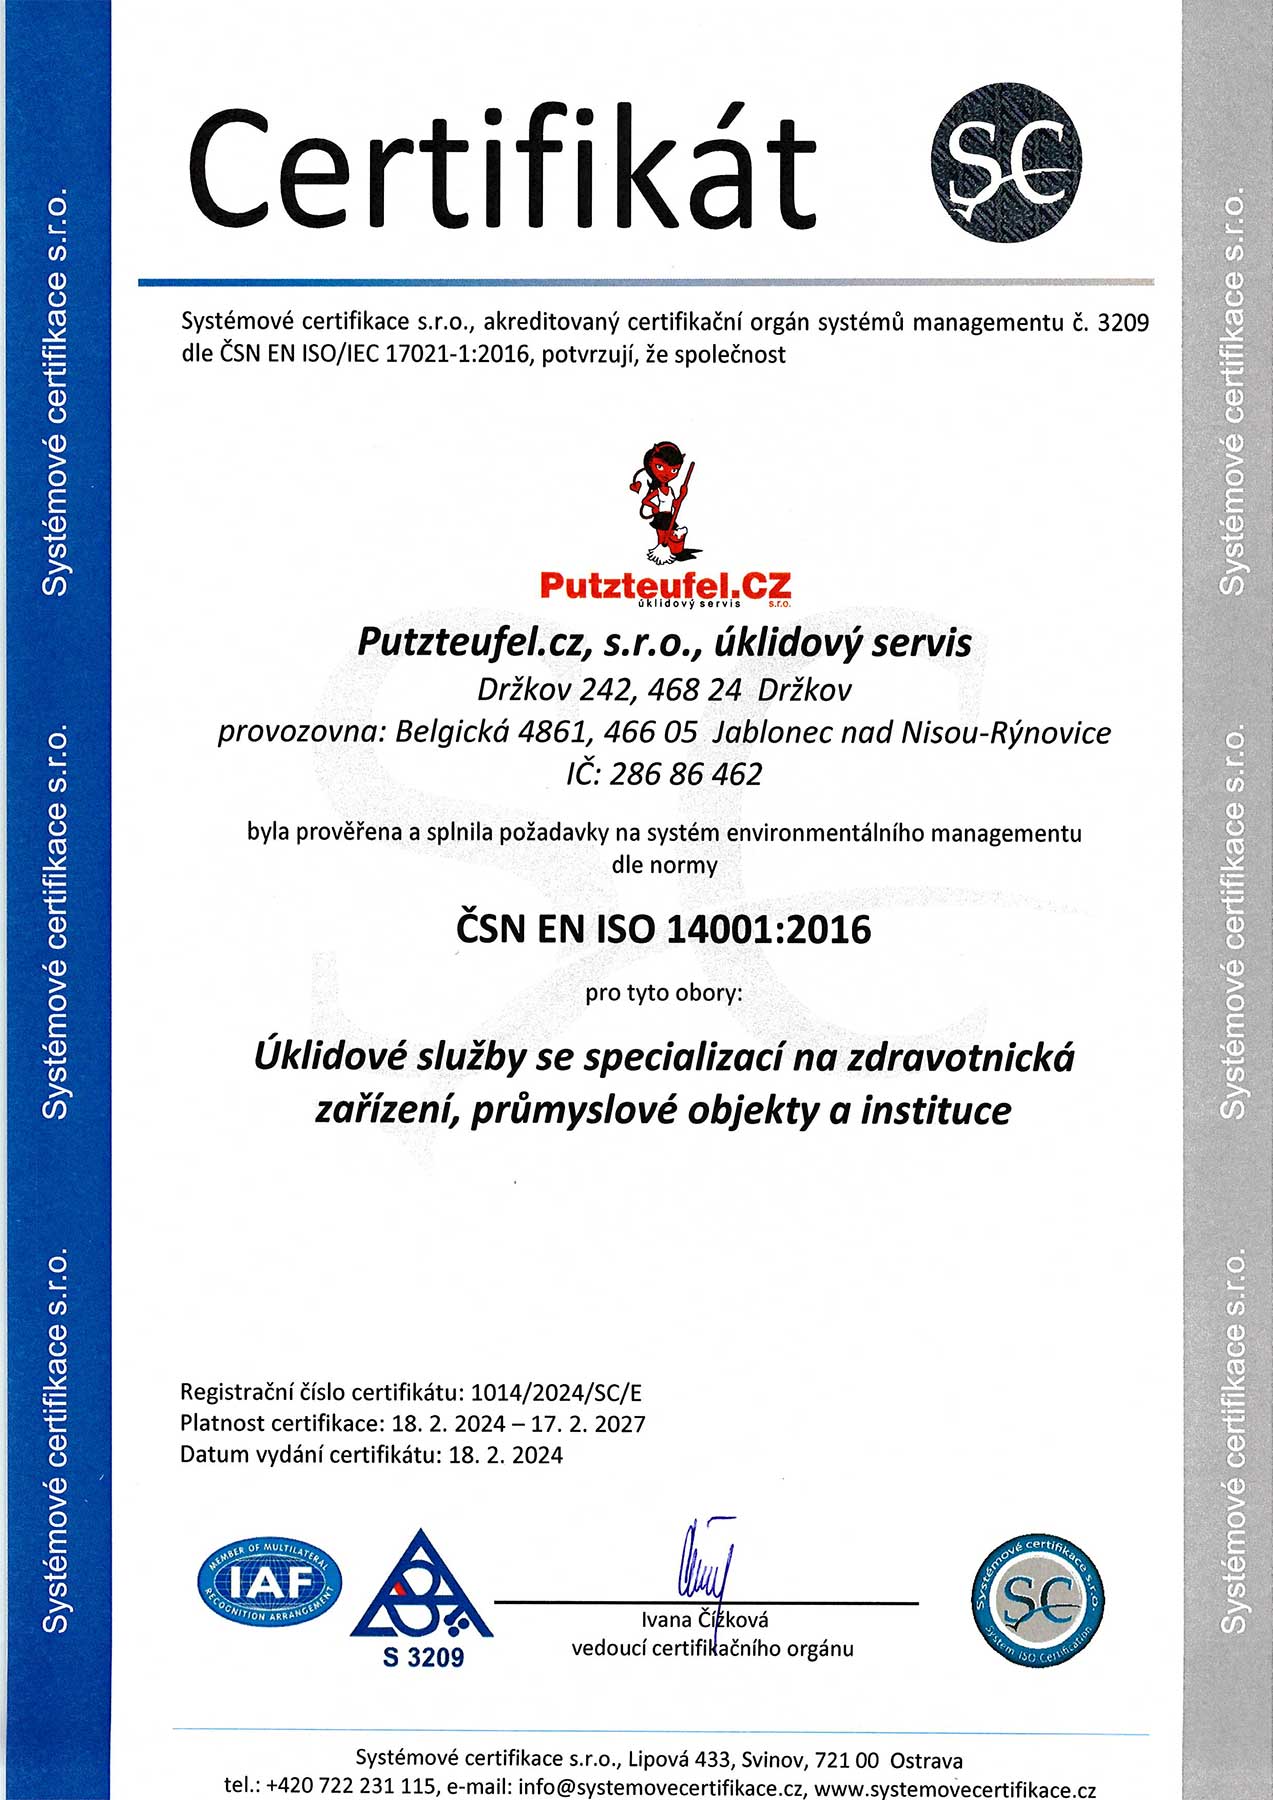 Putzteteufel Certifikát ISO 14001